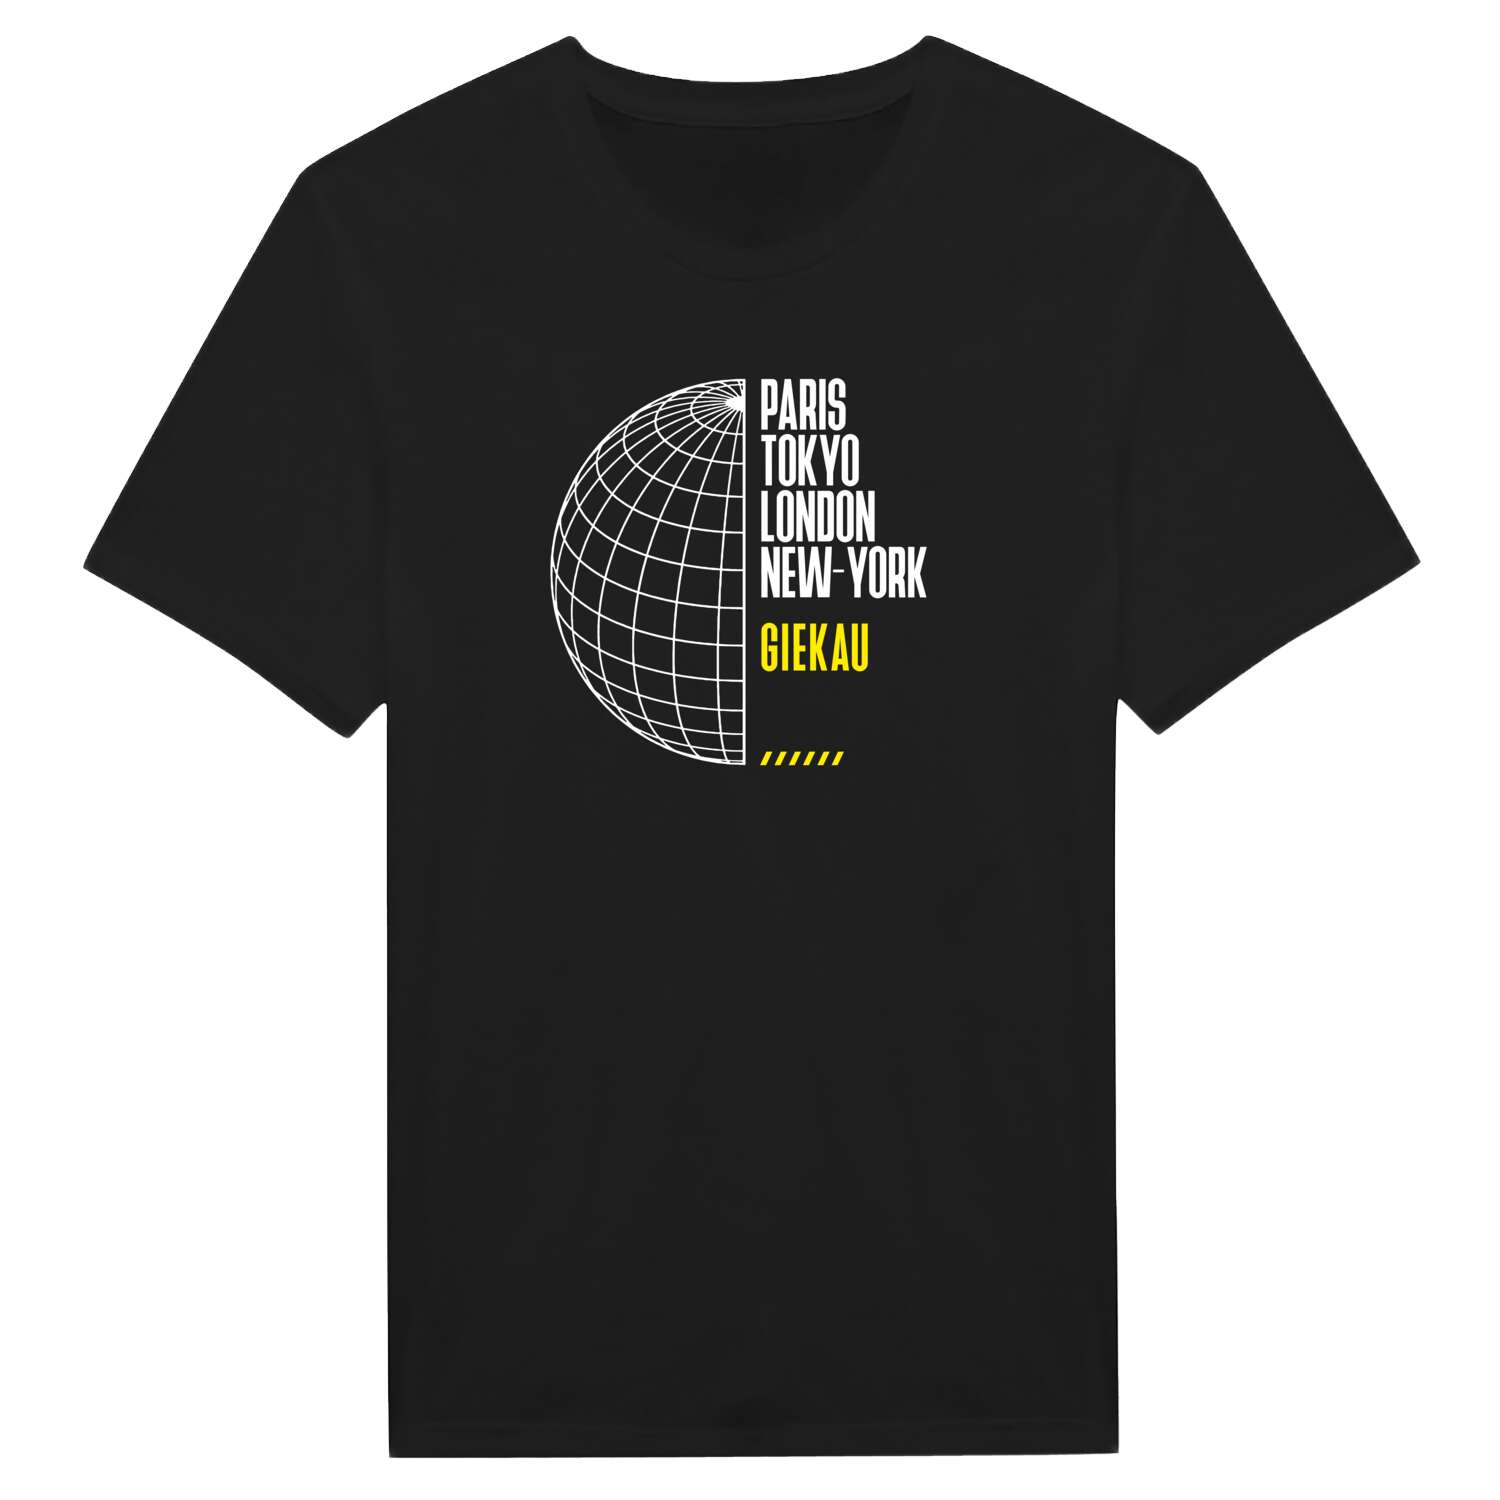 Giekau T-Shirt »Paris Tokyo London«